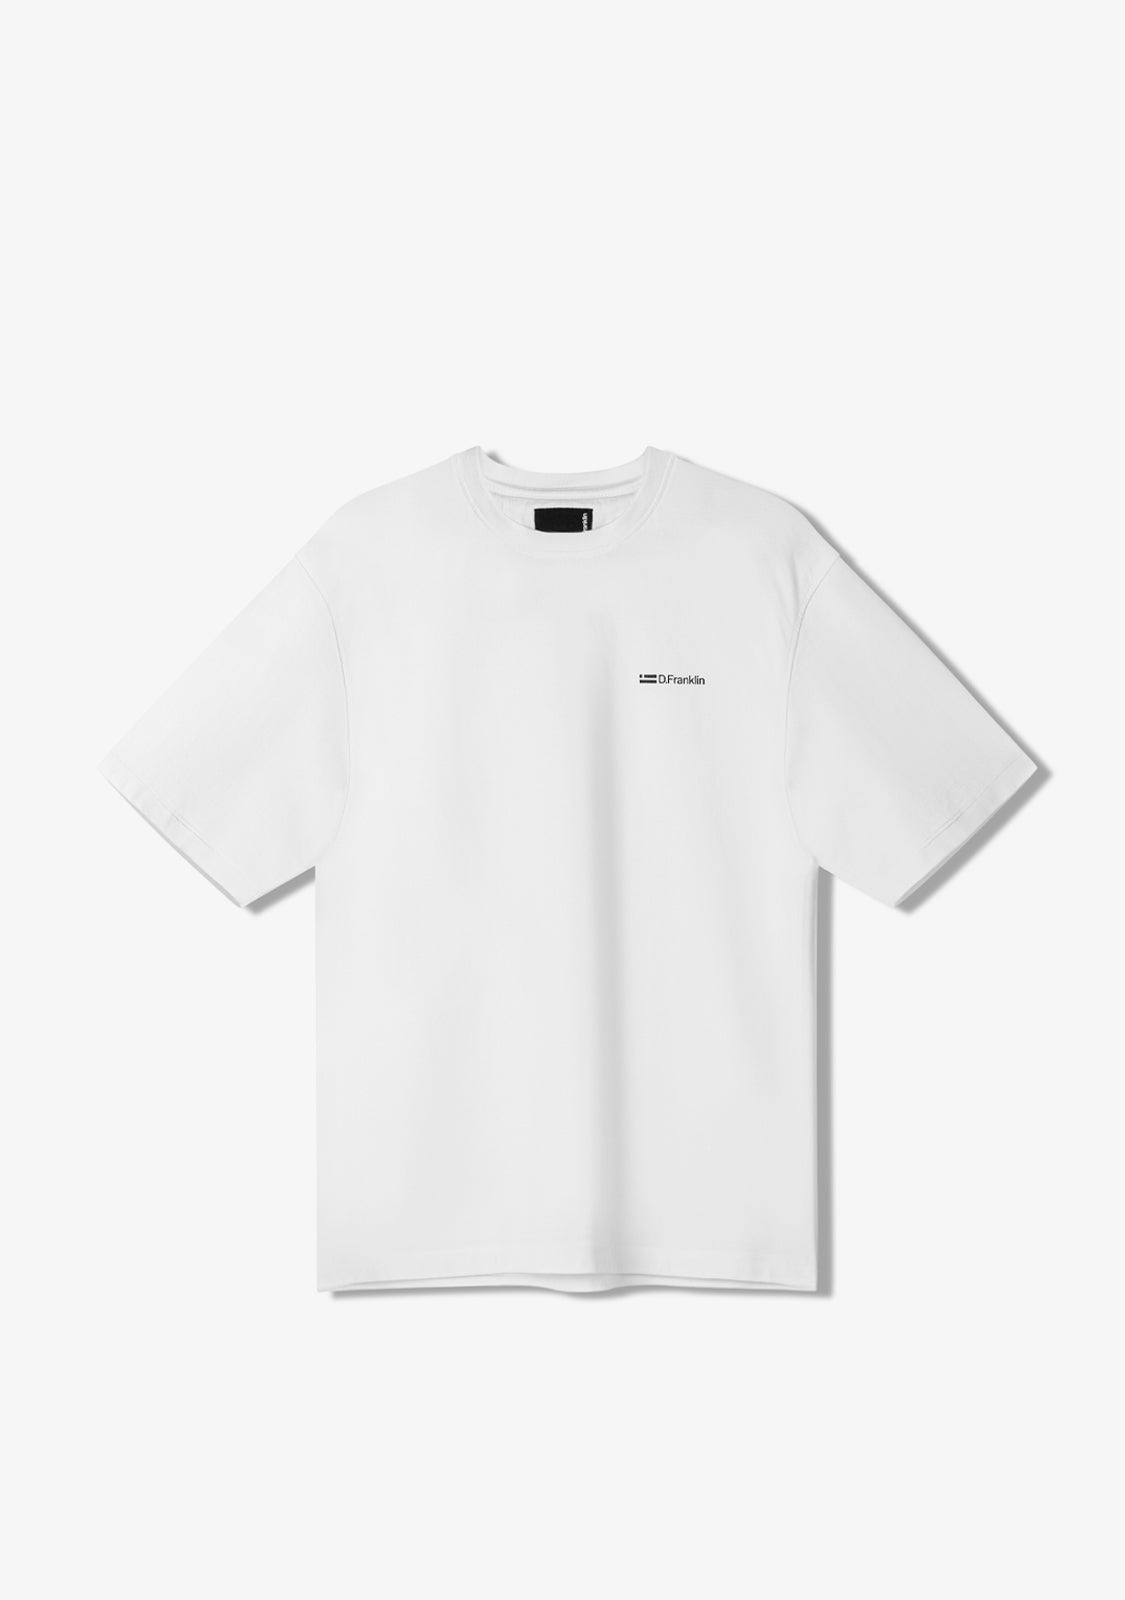 St. Denis T-Shirt White / Black